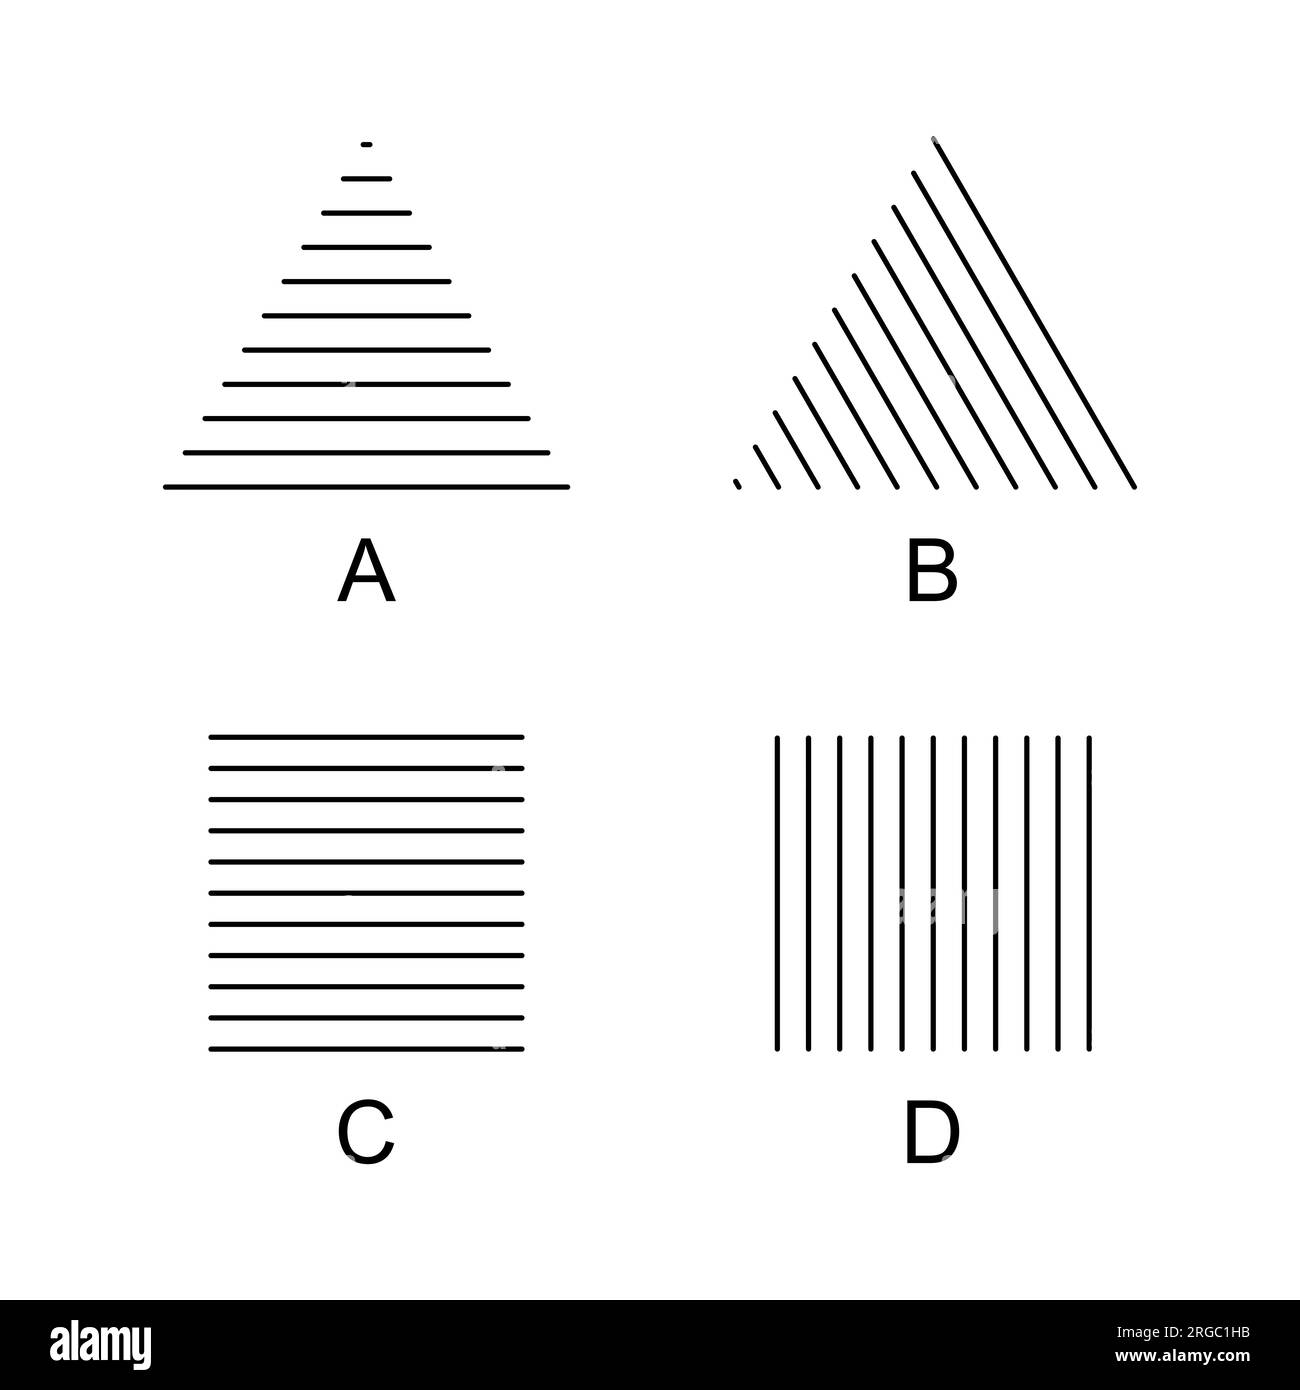 Helmholtz-Dreiecke und -Quadrate optische Täuschungen. Ein Dreieck erscheint höher (A), scheint sich nach rechts zu bewegen (B), ein Quadrat ist höher (C) oder breiter (D). Stockfoto